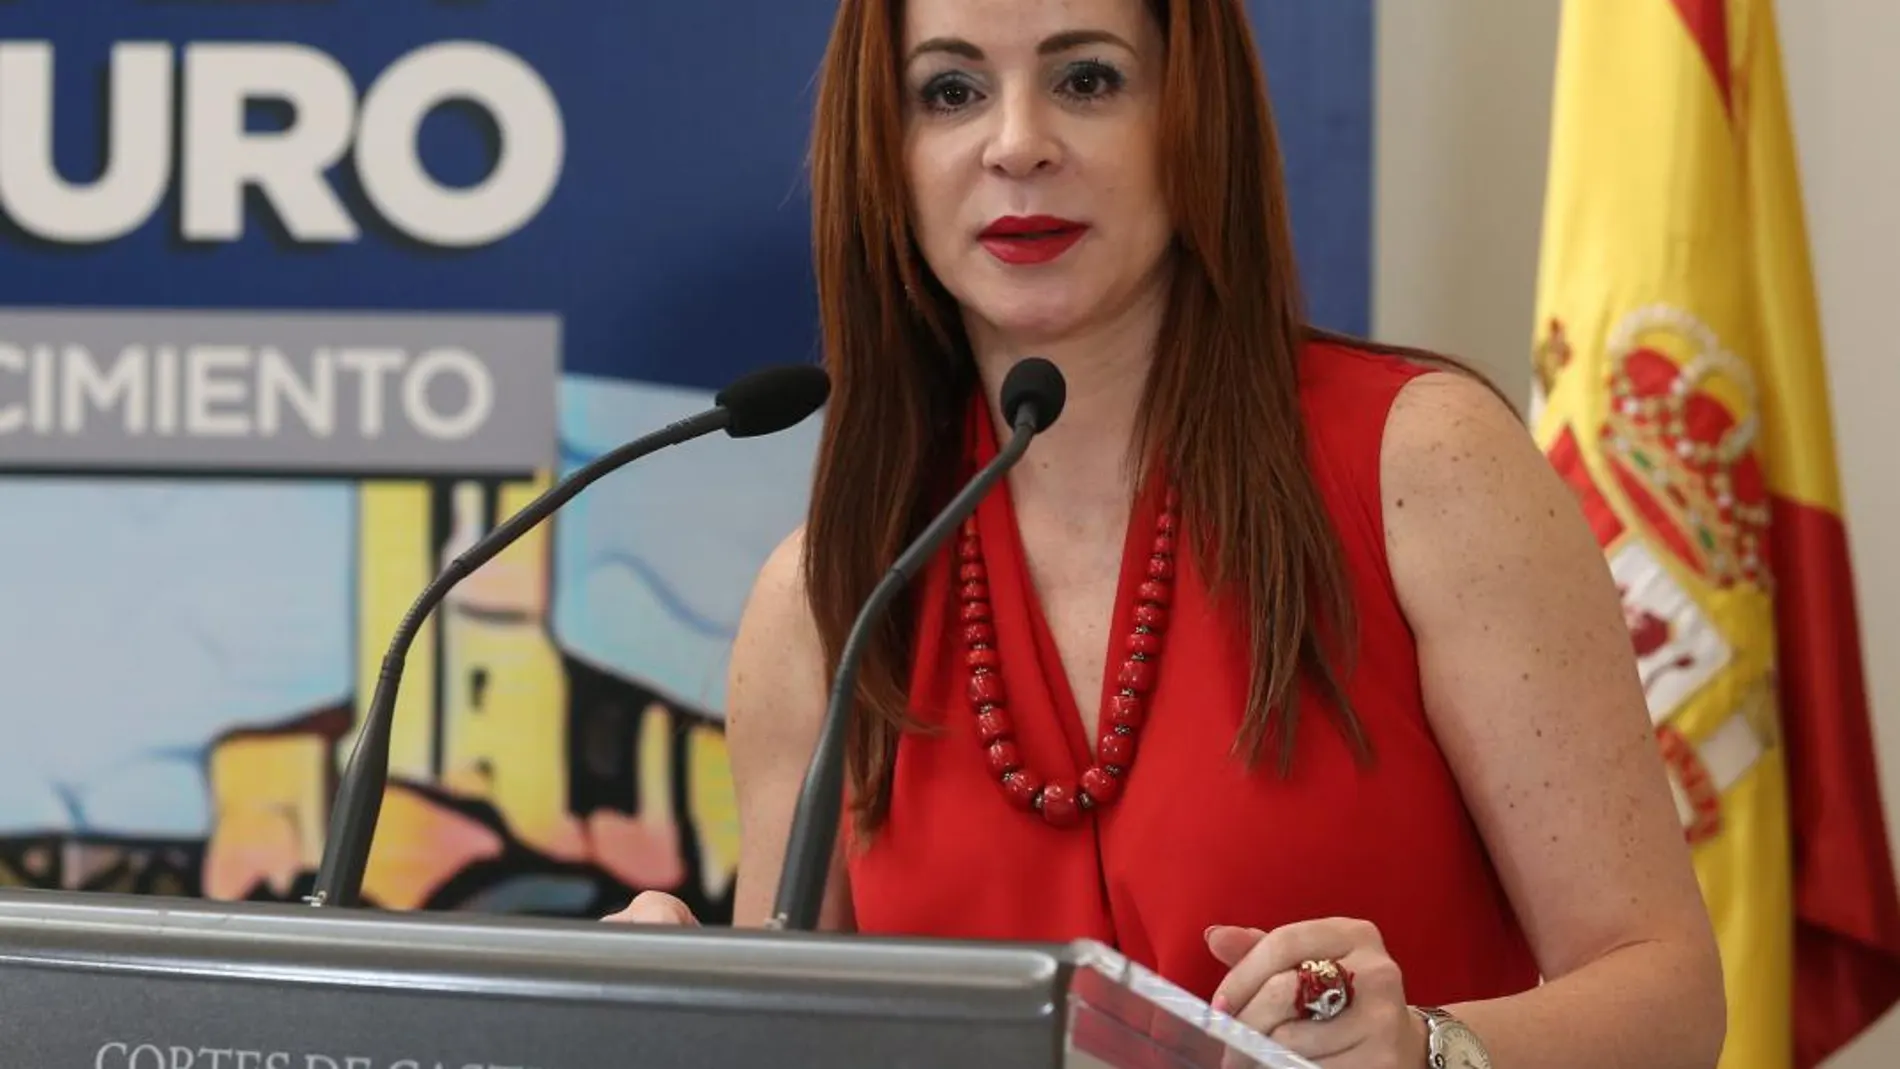 La presidenta de las Cortes regionales, Silvia Clemente, tendrá un papel protagonista en un Congreso sobre el Estado de las Autonomías, que se celebra en Santander